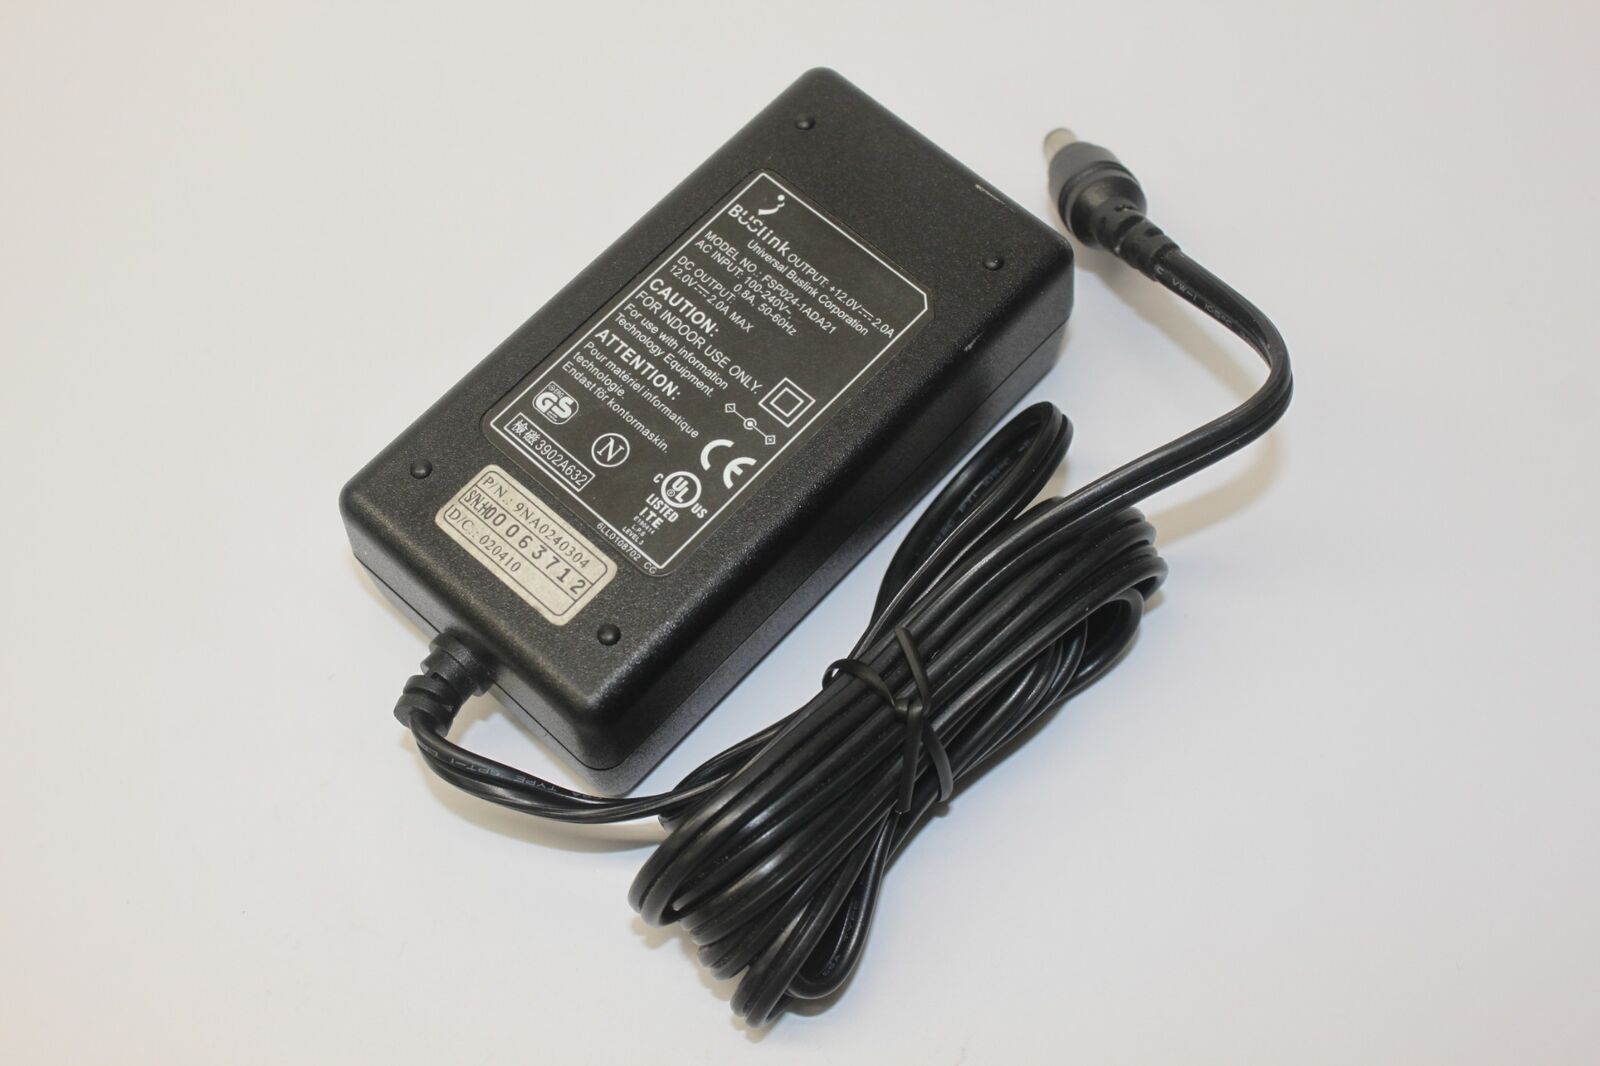 Original Buslink FSP024-1ADA21 AC Adapter 12V 2.0A Power Supply Charger Brand: Buslink Type: Adapter MPN: FSP024-1A